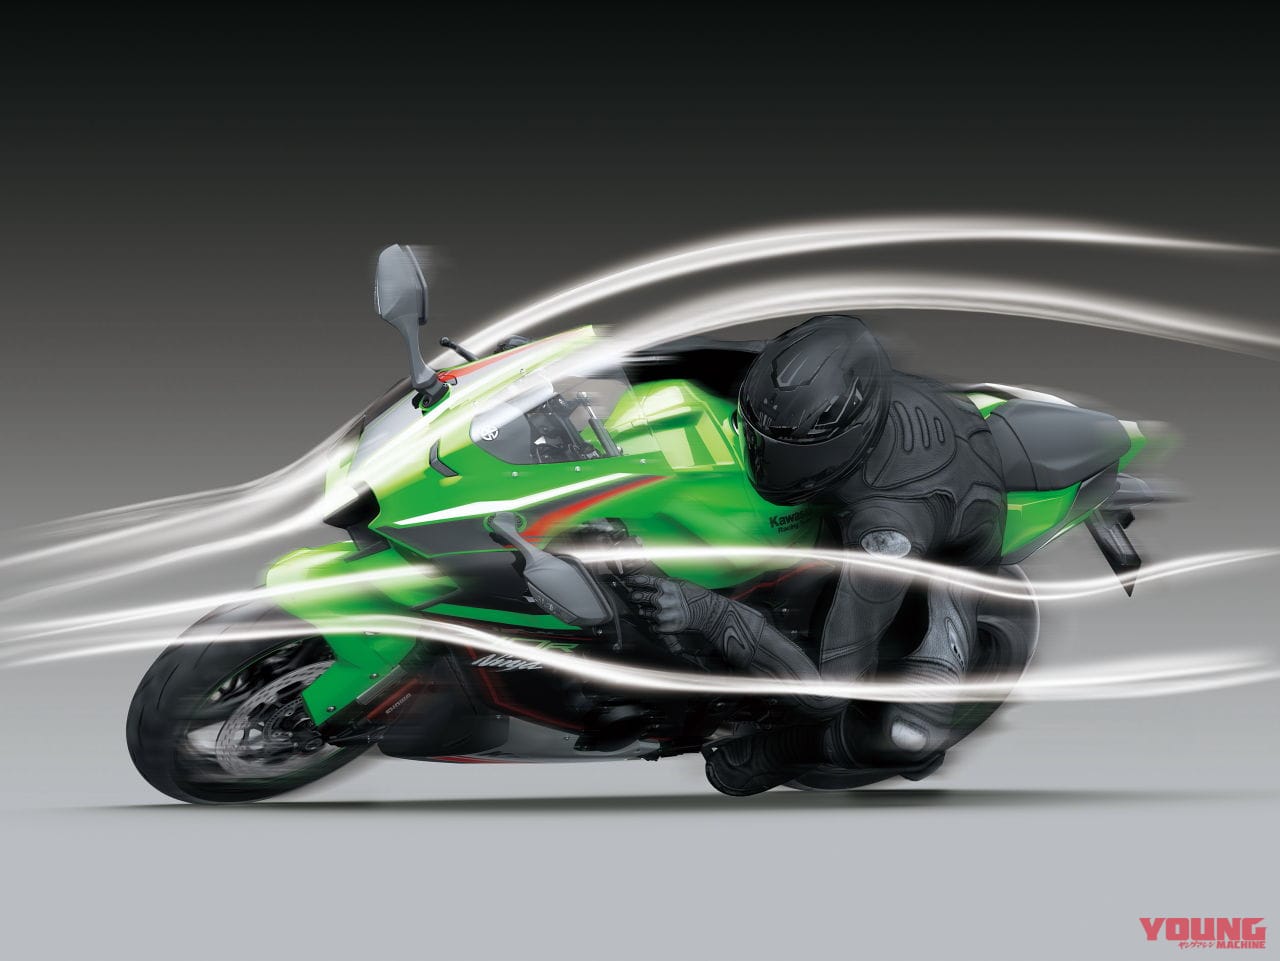 カワサキ新型 Ninja Zx 10r Ninja Zx 10rr 発表 クルーズコントロールまで装備 Webヤングマシン 最新バイク情報